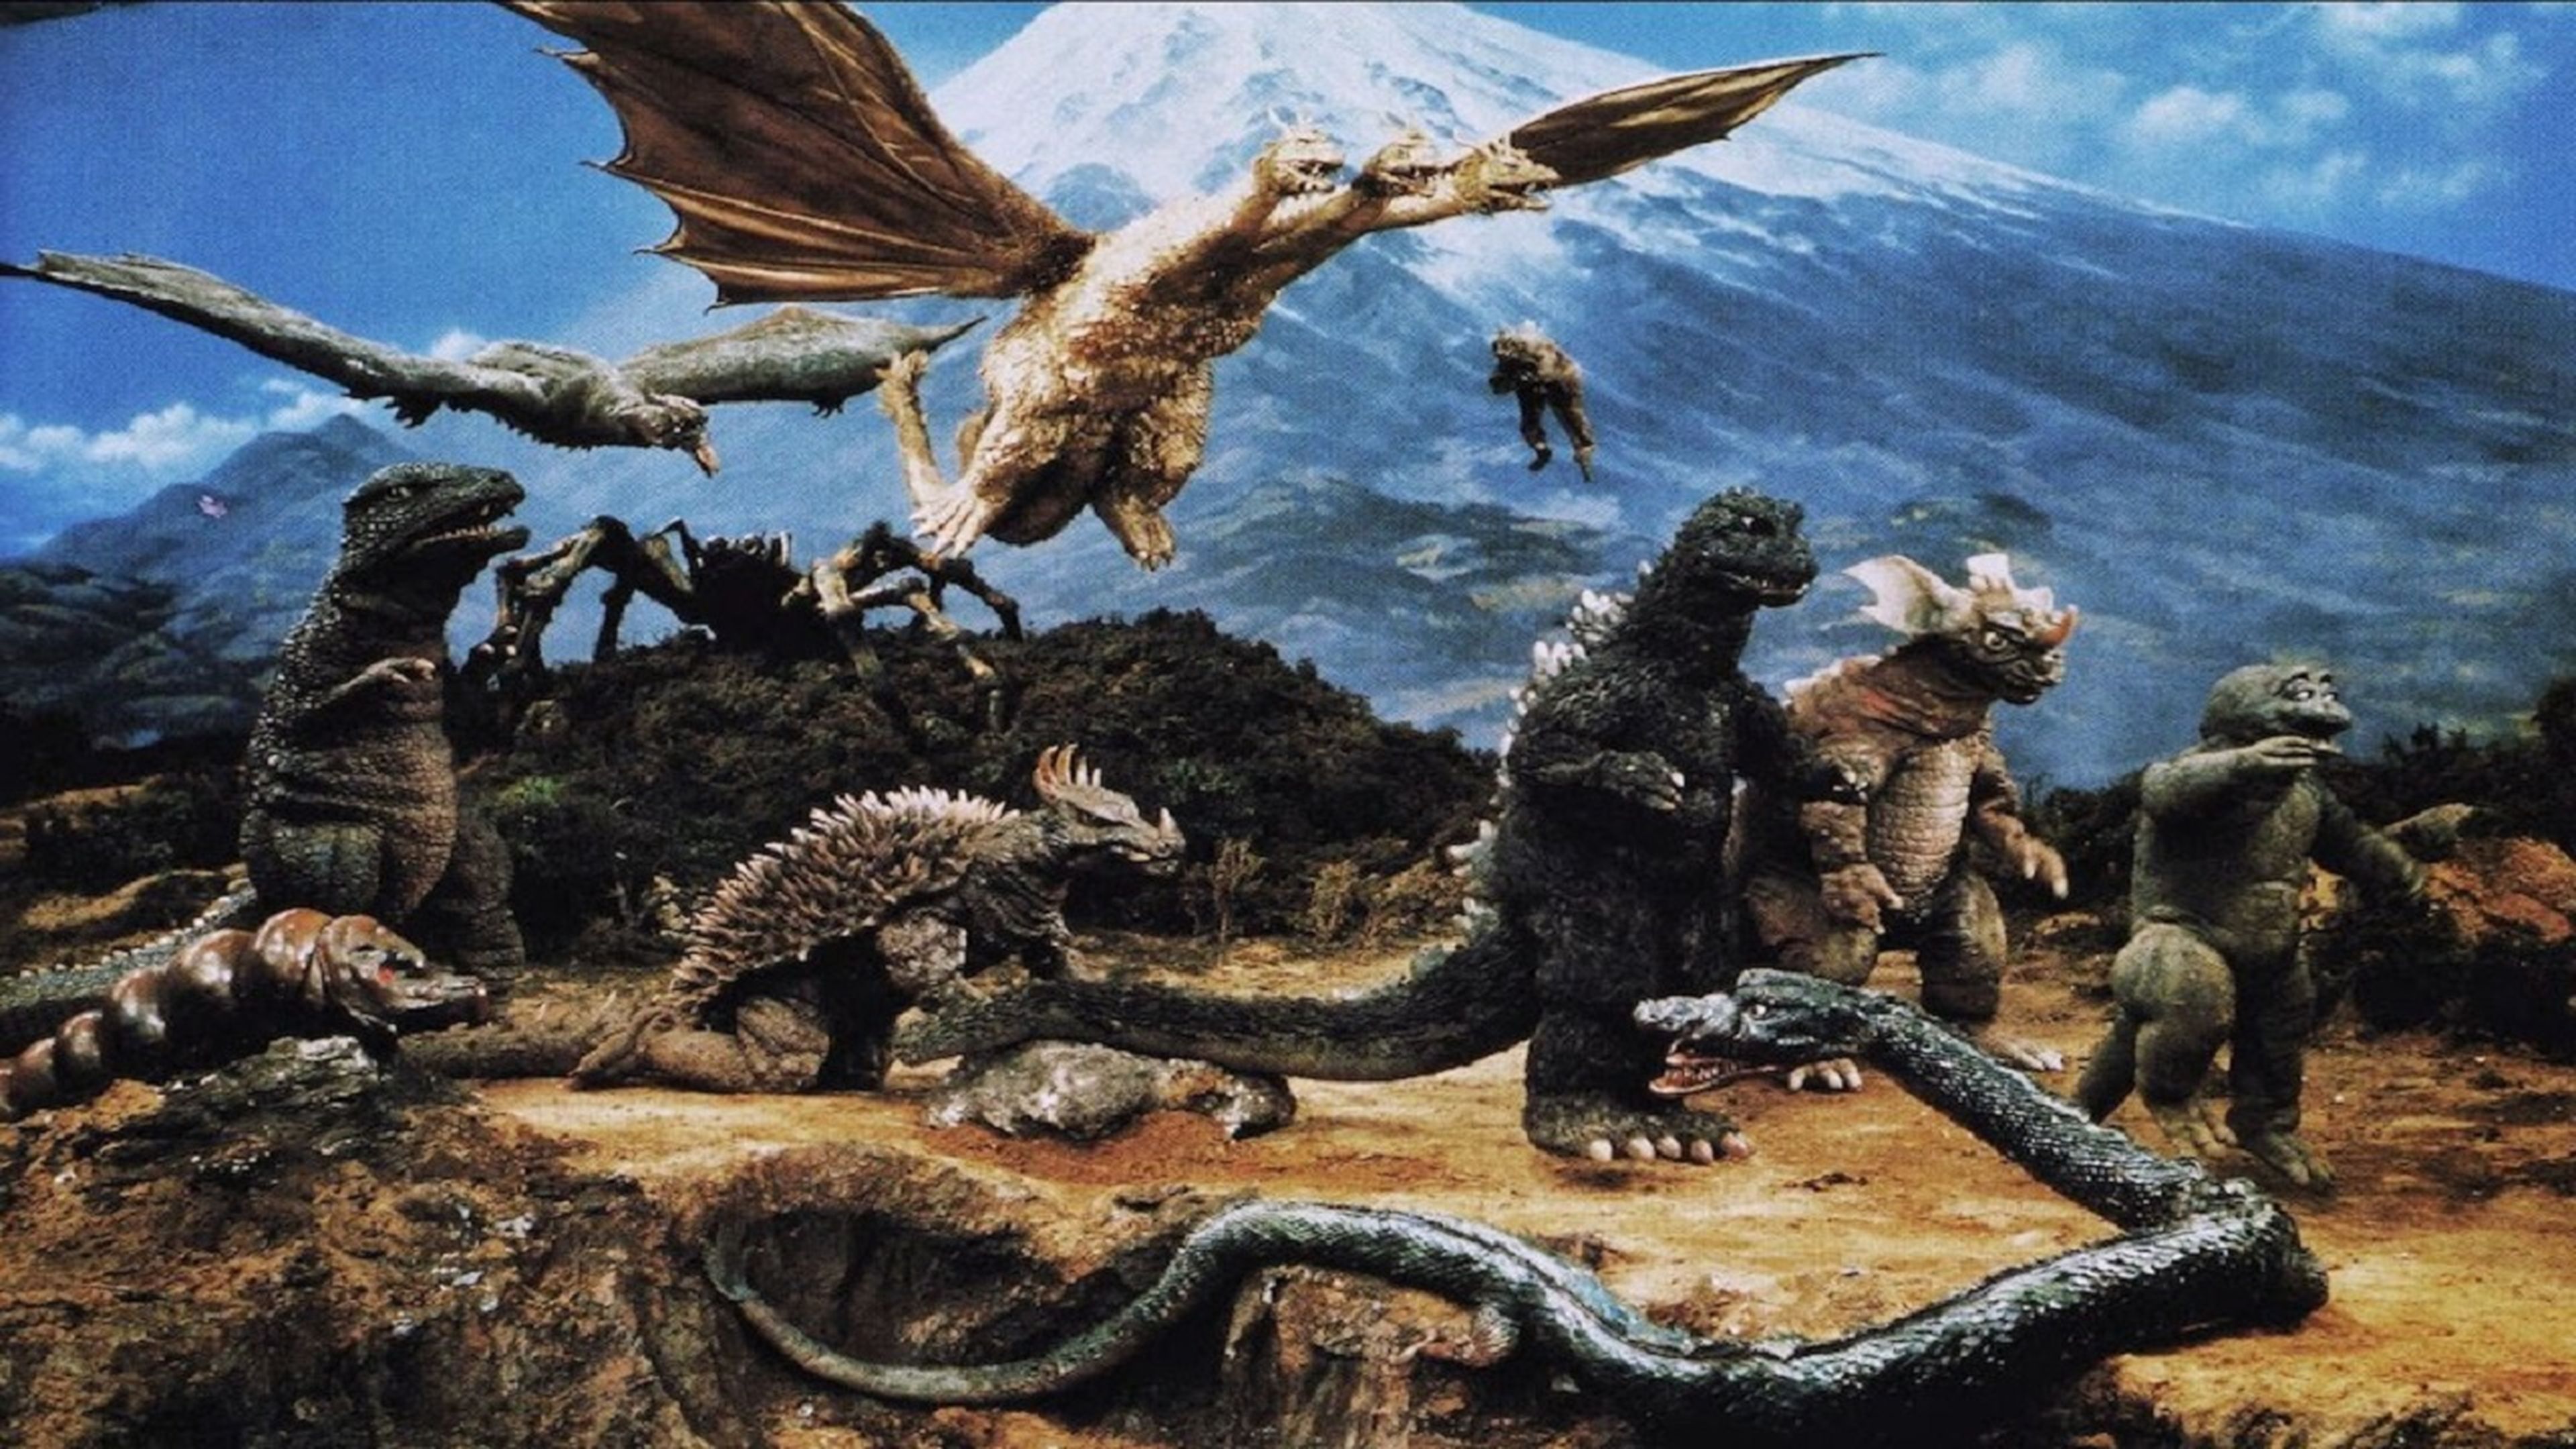 5 películas clásicas de Godzilla que tienes que conocer antes de ver su nueva entrega con Kong